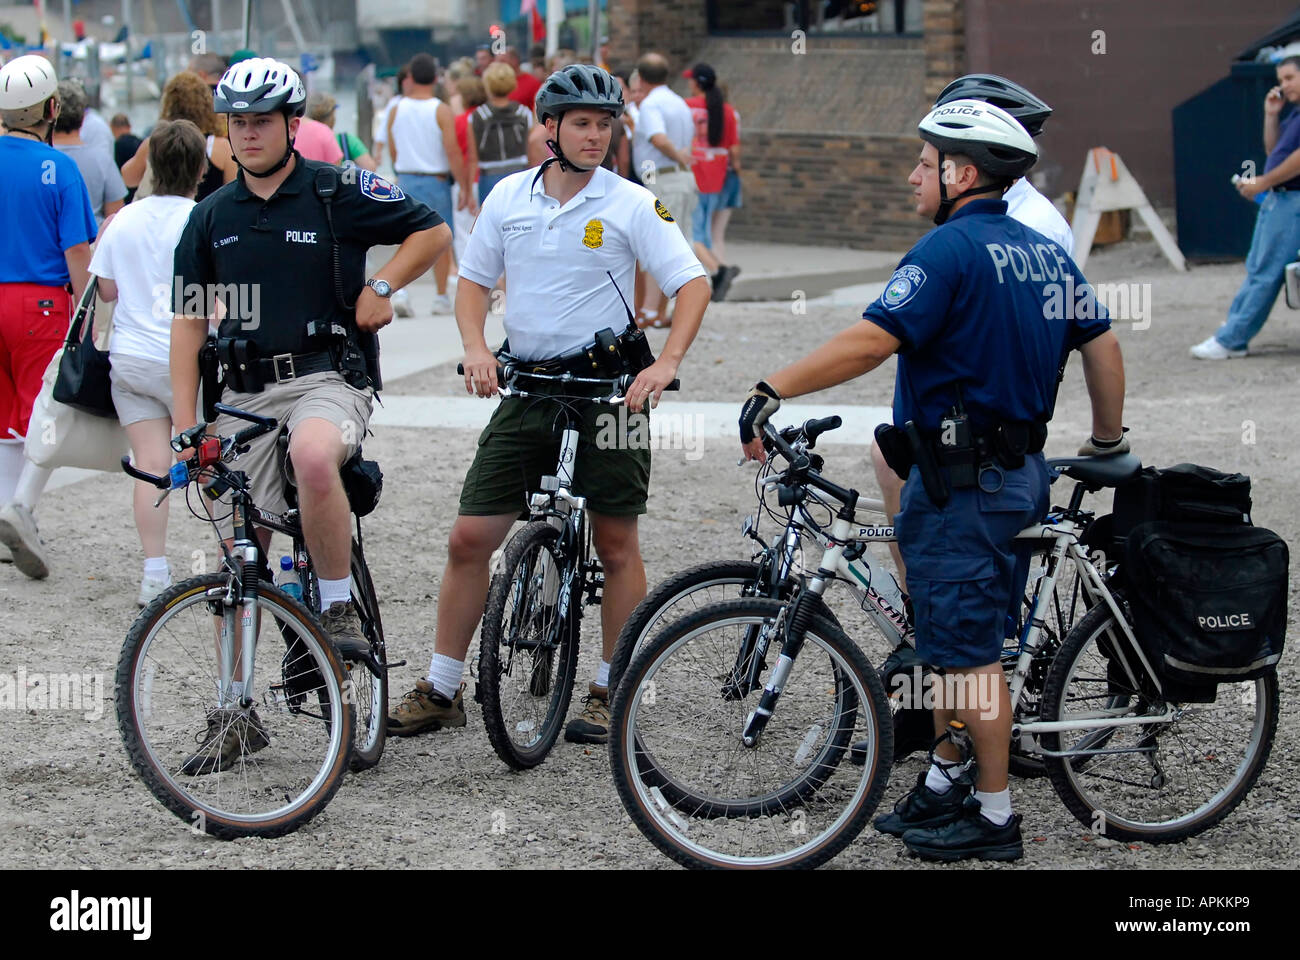 Polizei-Einsatz Boote Fahrräder und verschiedene Formen der Kommunikation um zu patrouillieren, ein fest, an denen große Menschenmengen Stockfoto